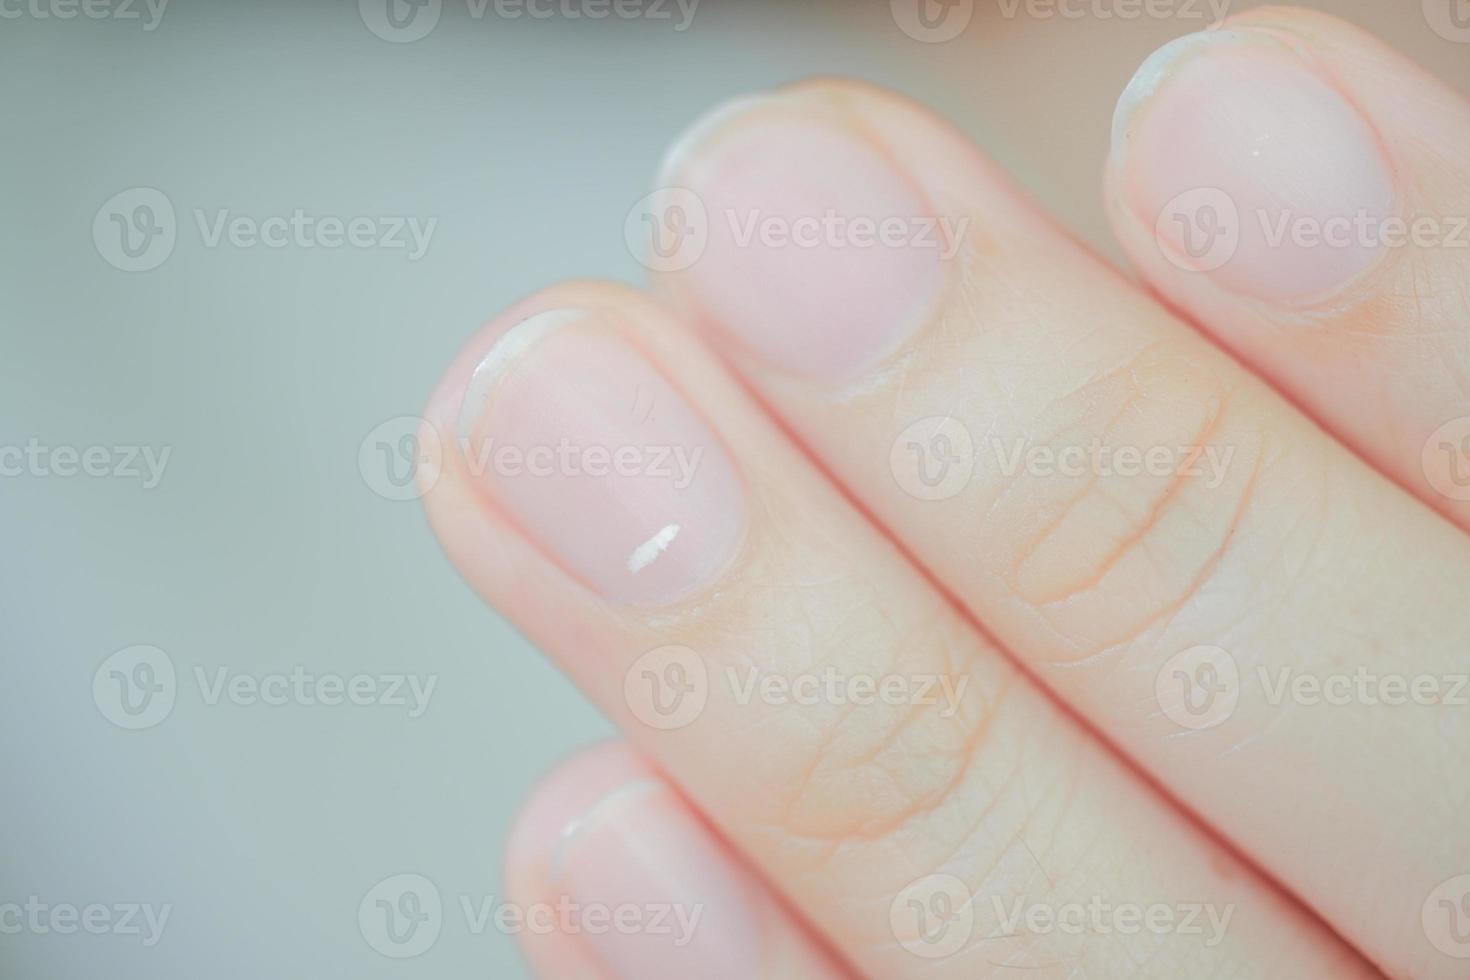 vita fläckar på naglar som kallas leukonychia avslöjar uppkomsten av hälsoproblem. foto